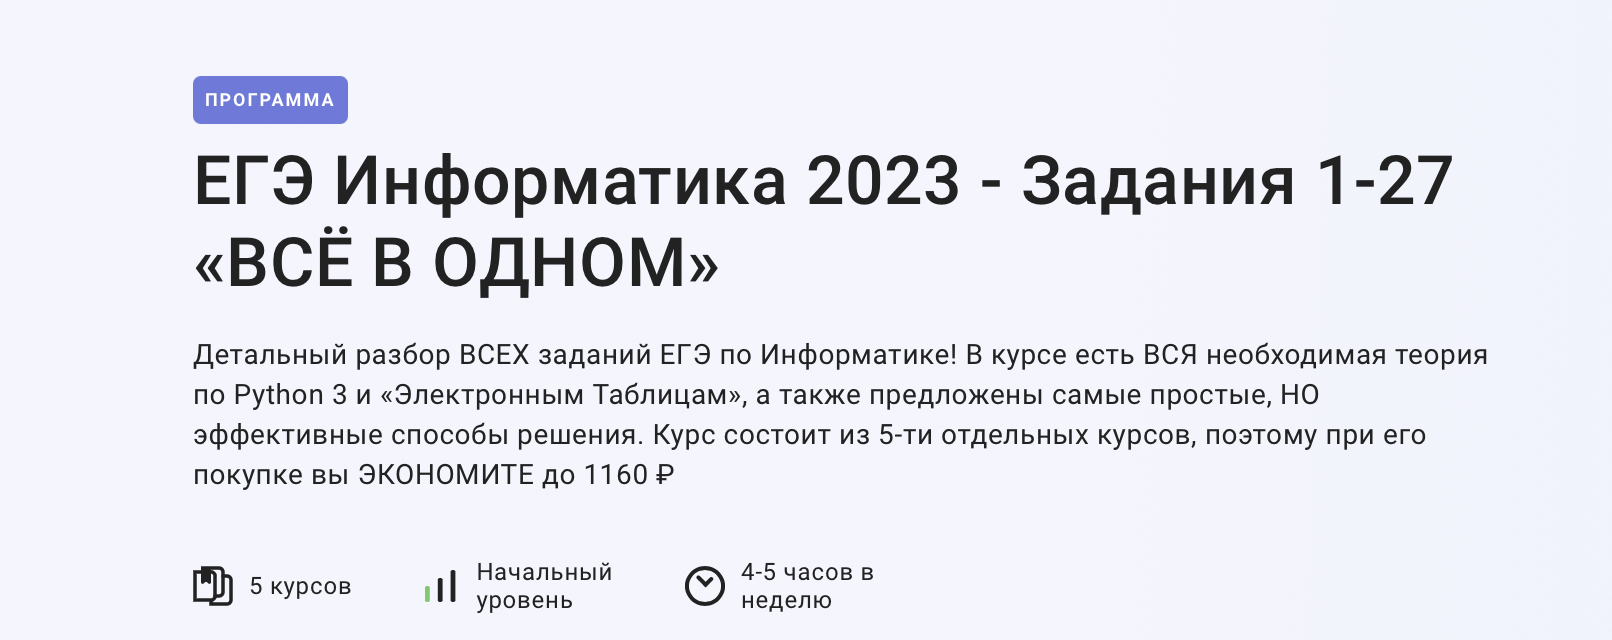 Мош информатика 2023. Задания ЕГЭ по информатике 2023. Изменения в ЕГЭ по информатике 2023. Продолжительность ЕГЭ по информатике 2023. 11 Задание ЕГЭ Информатика 2023.